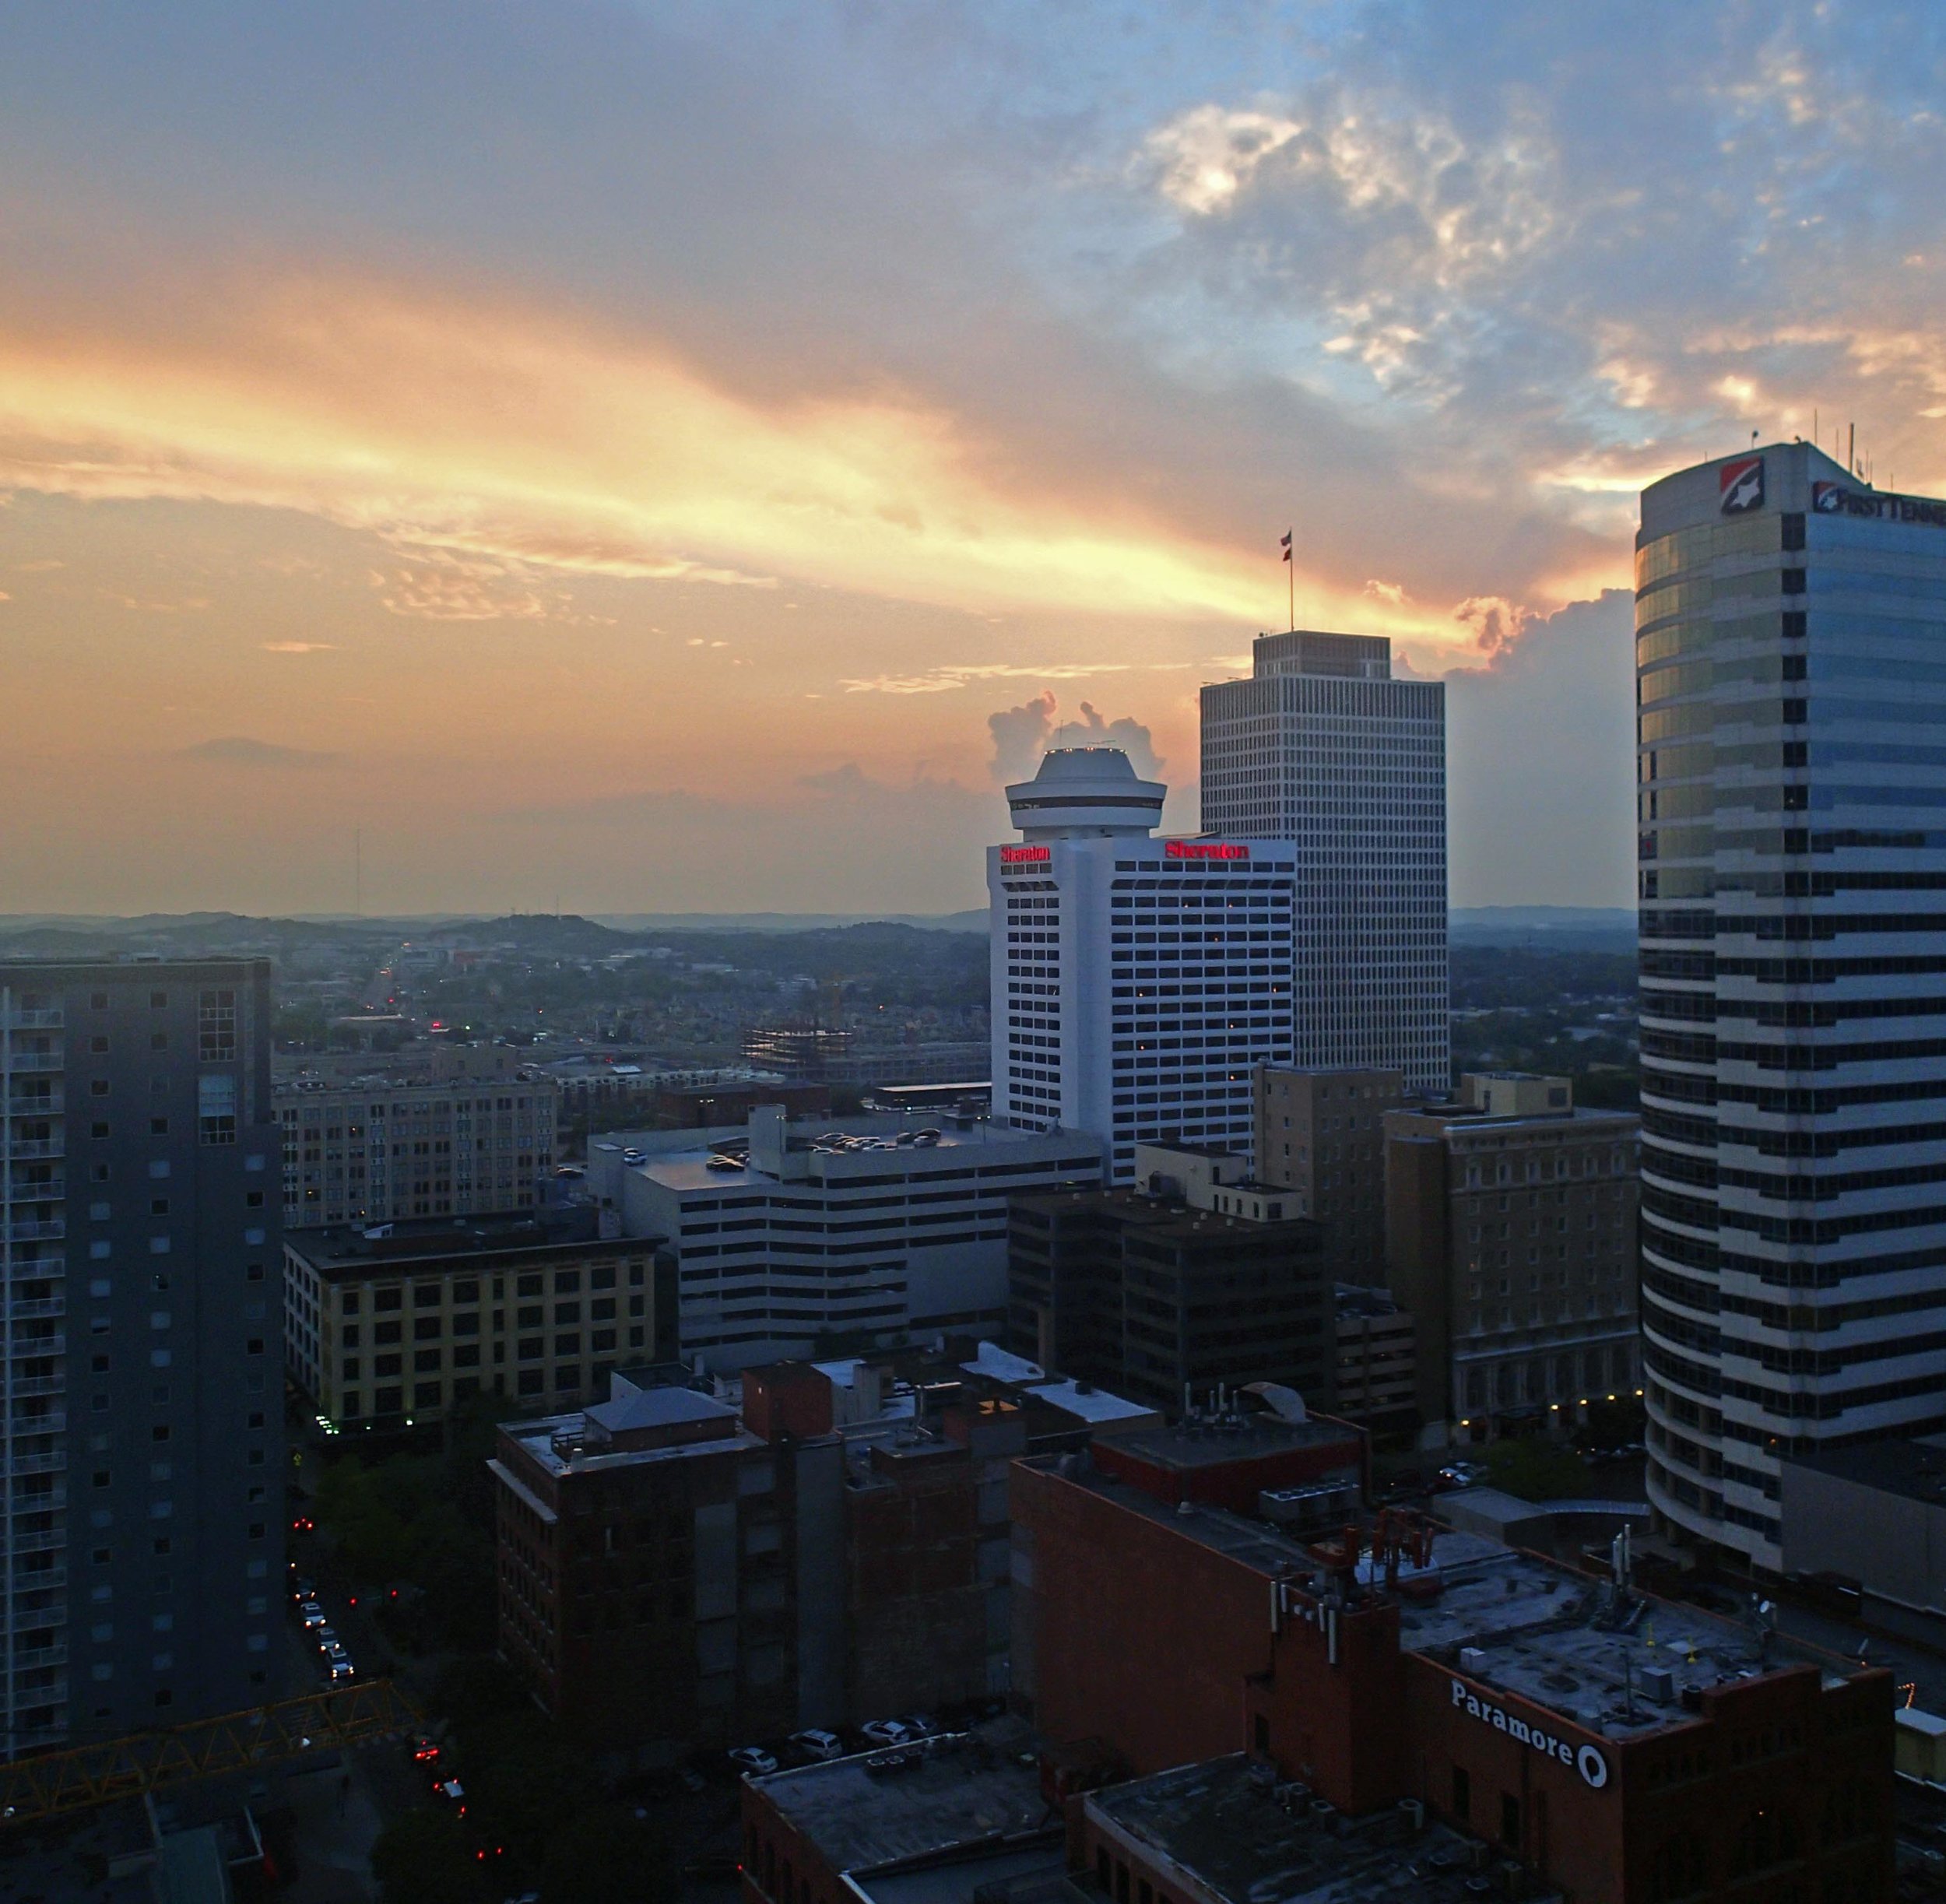 sunset over Nashville.jpg